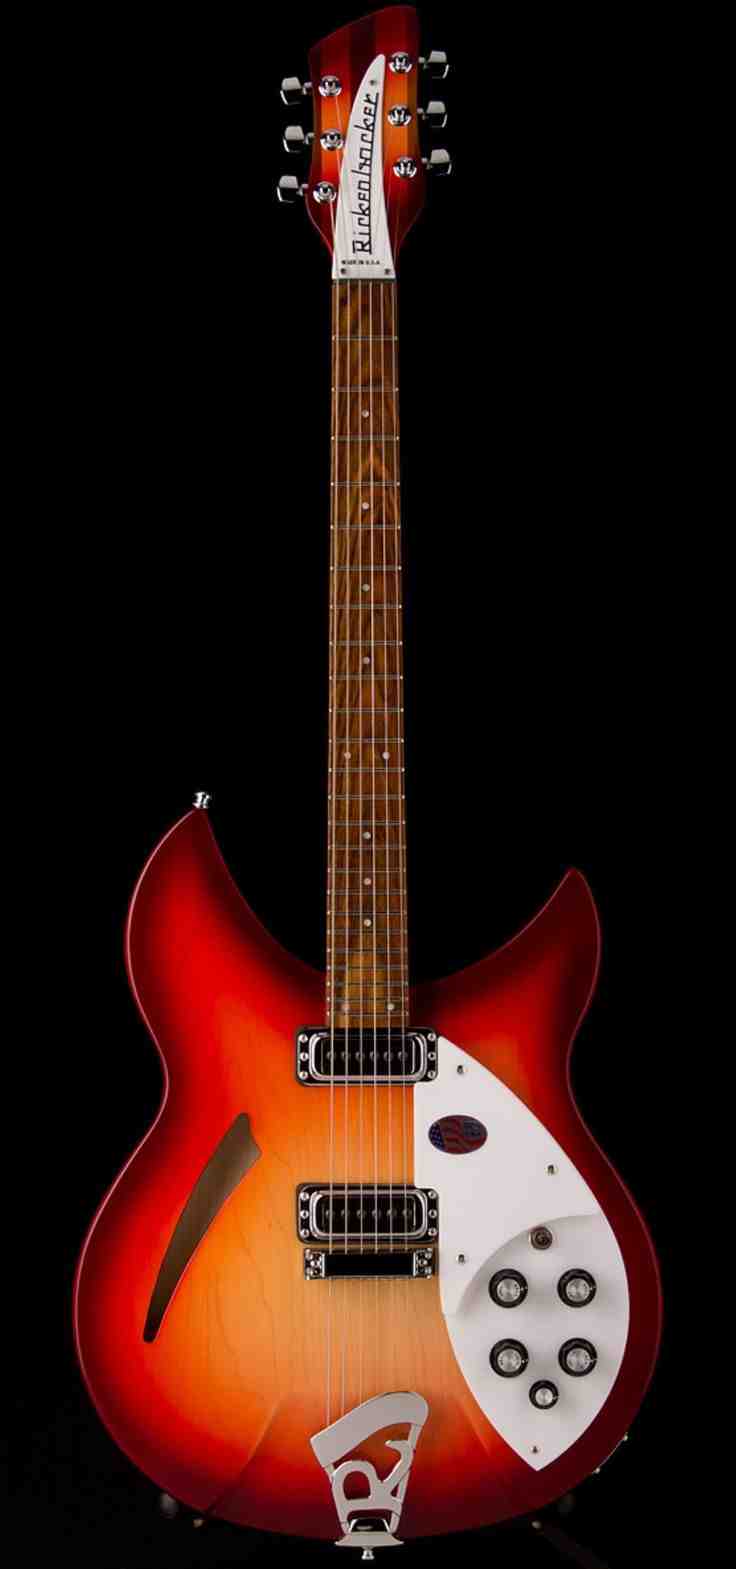 adolph rickenbacker electric guitar